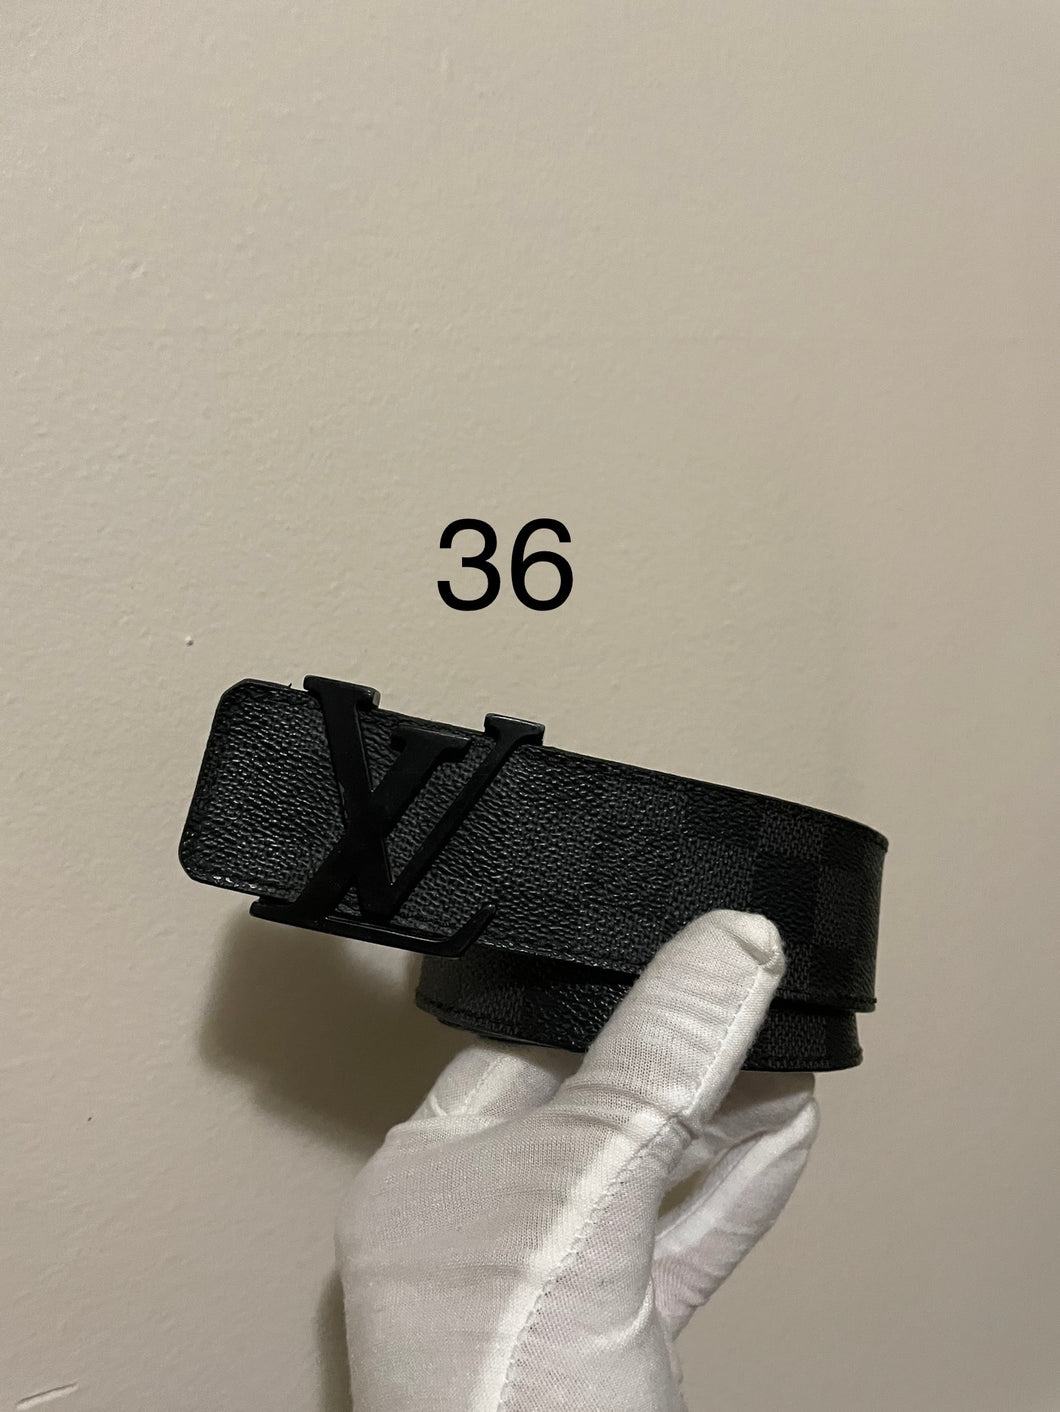 Louis Vuitton damier graphite initials belt sz 36 (fits 30-34)